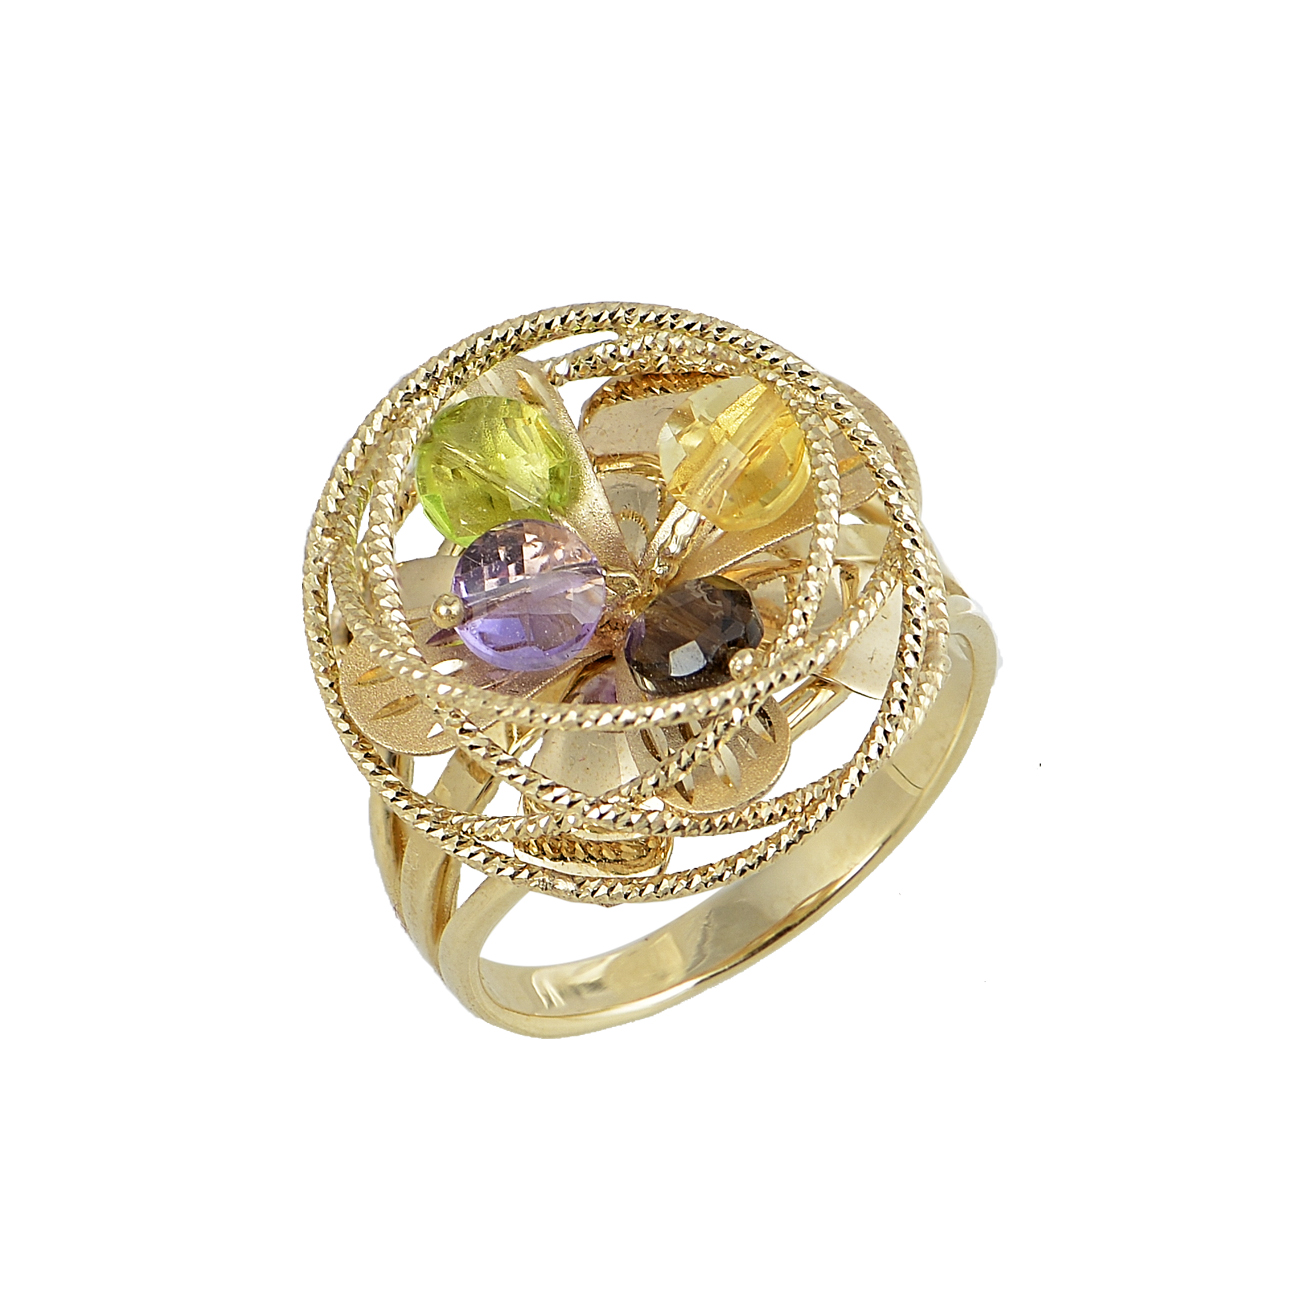 Εικόνα του προιόντος Χρυσό Δαχτυλίδι Χρωματιστές Πέτρες Λουλούδι